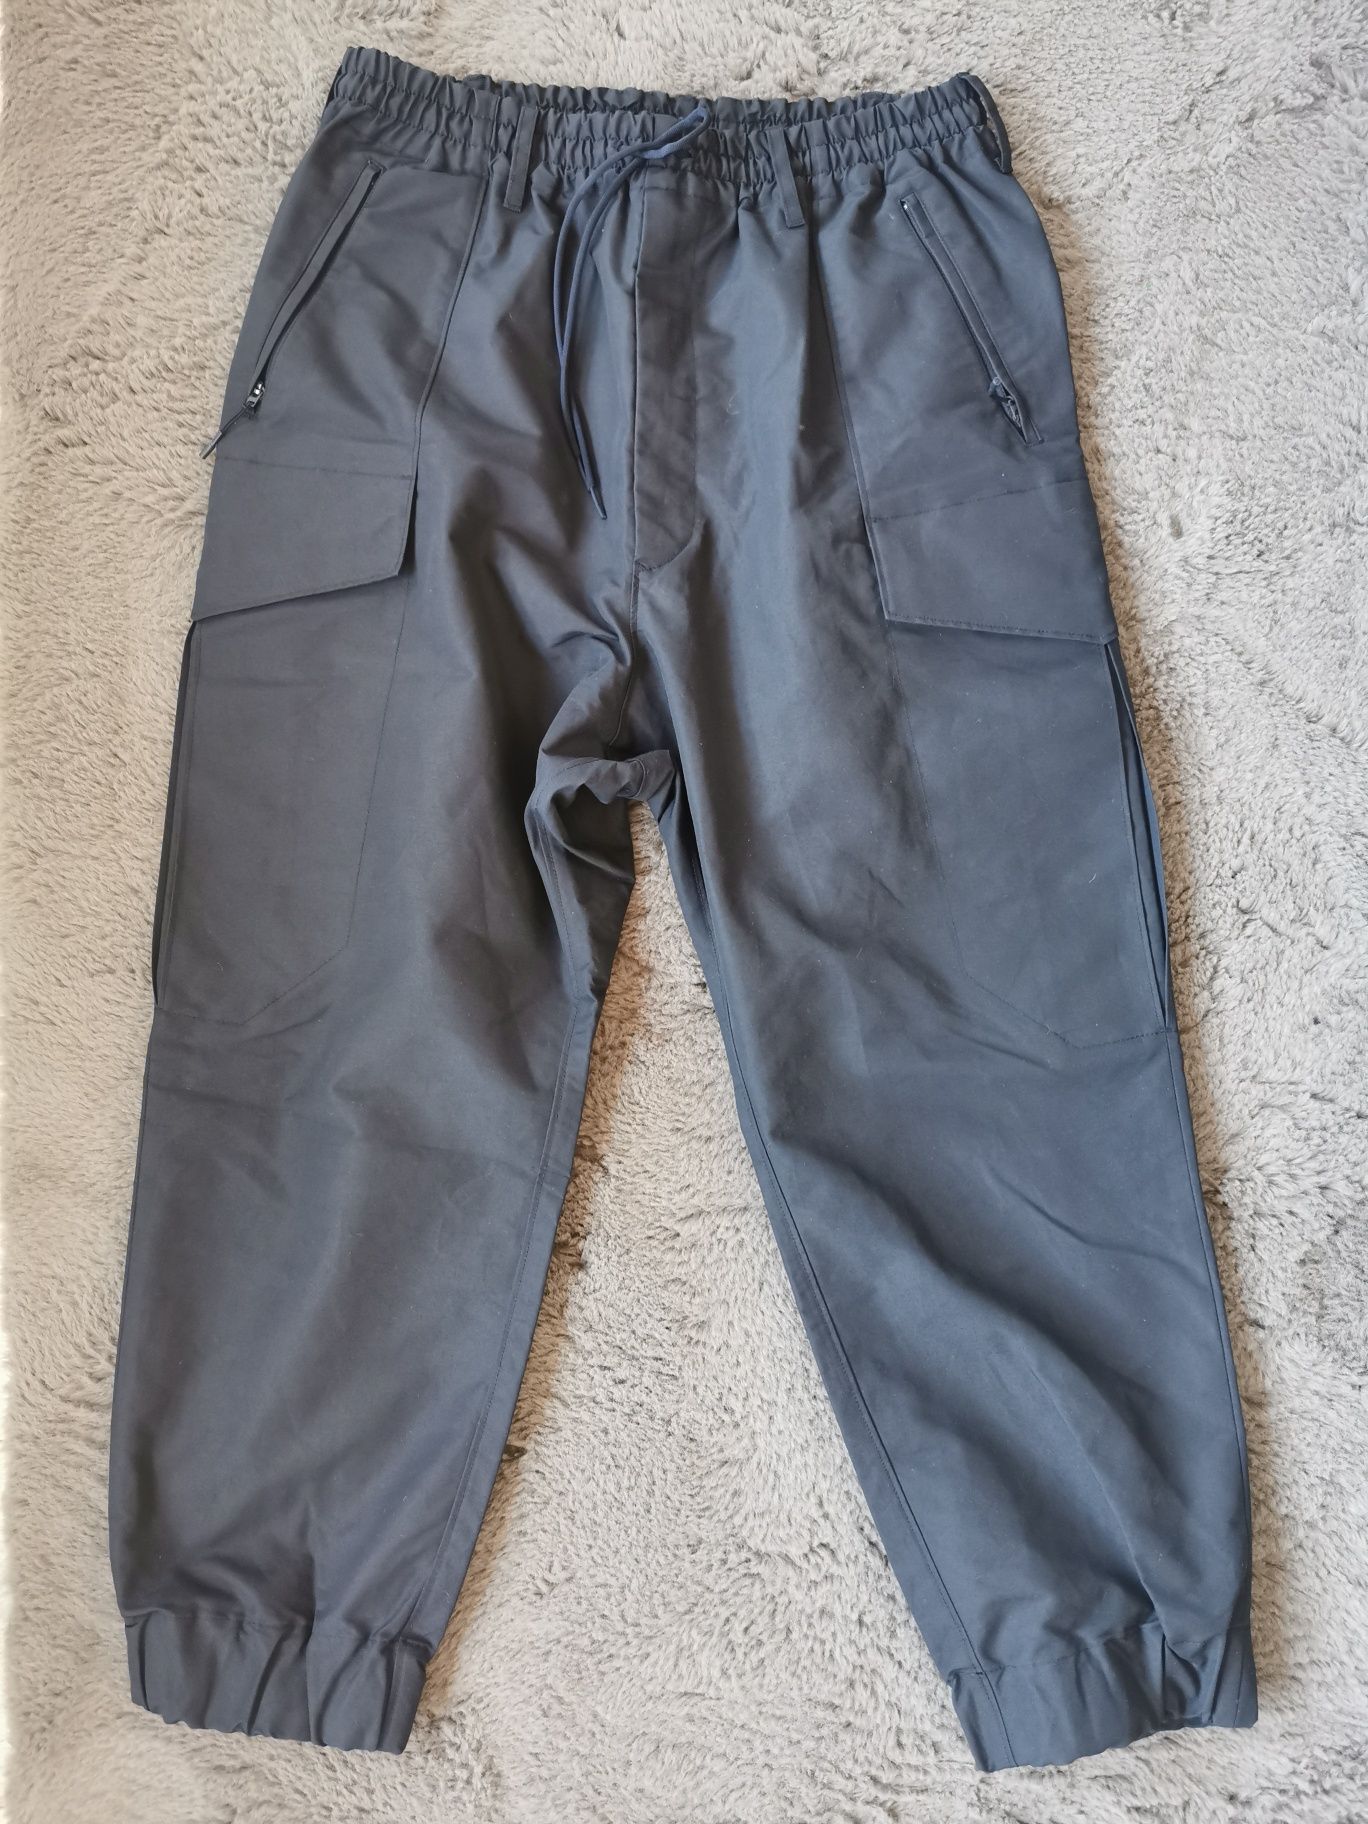 Vand pantaloni adidas y-3 Yohji Yamamoto